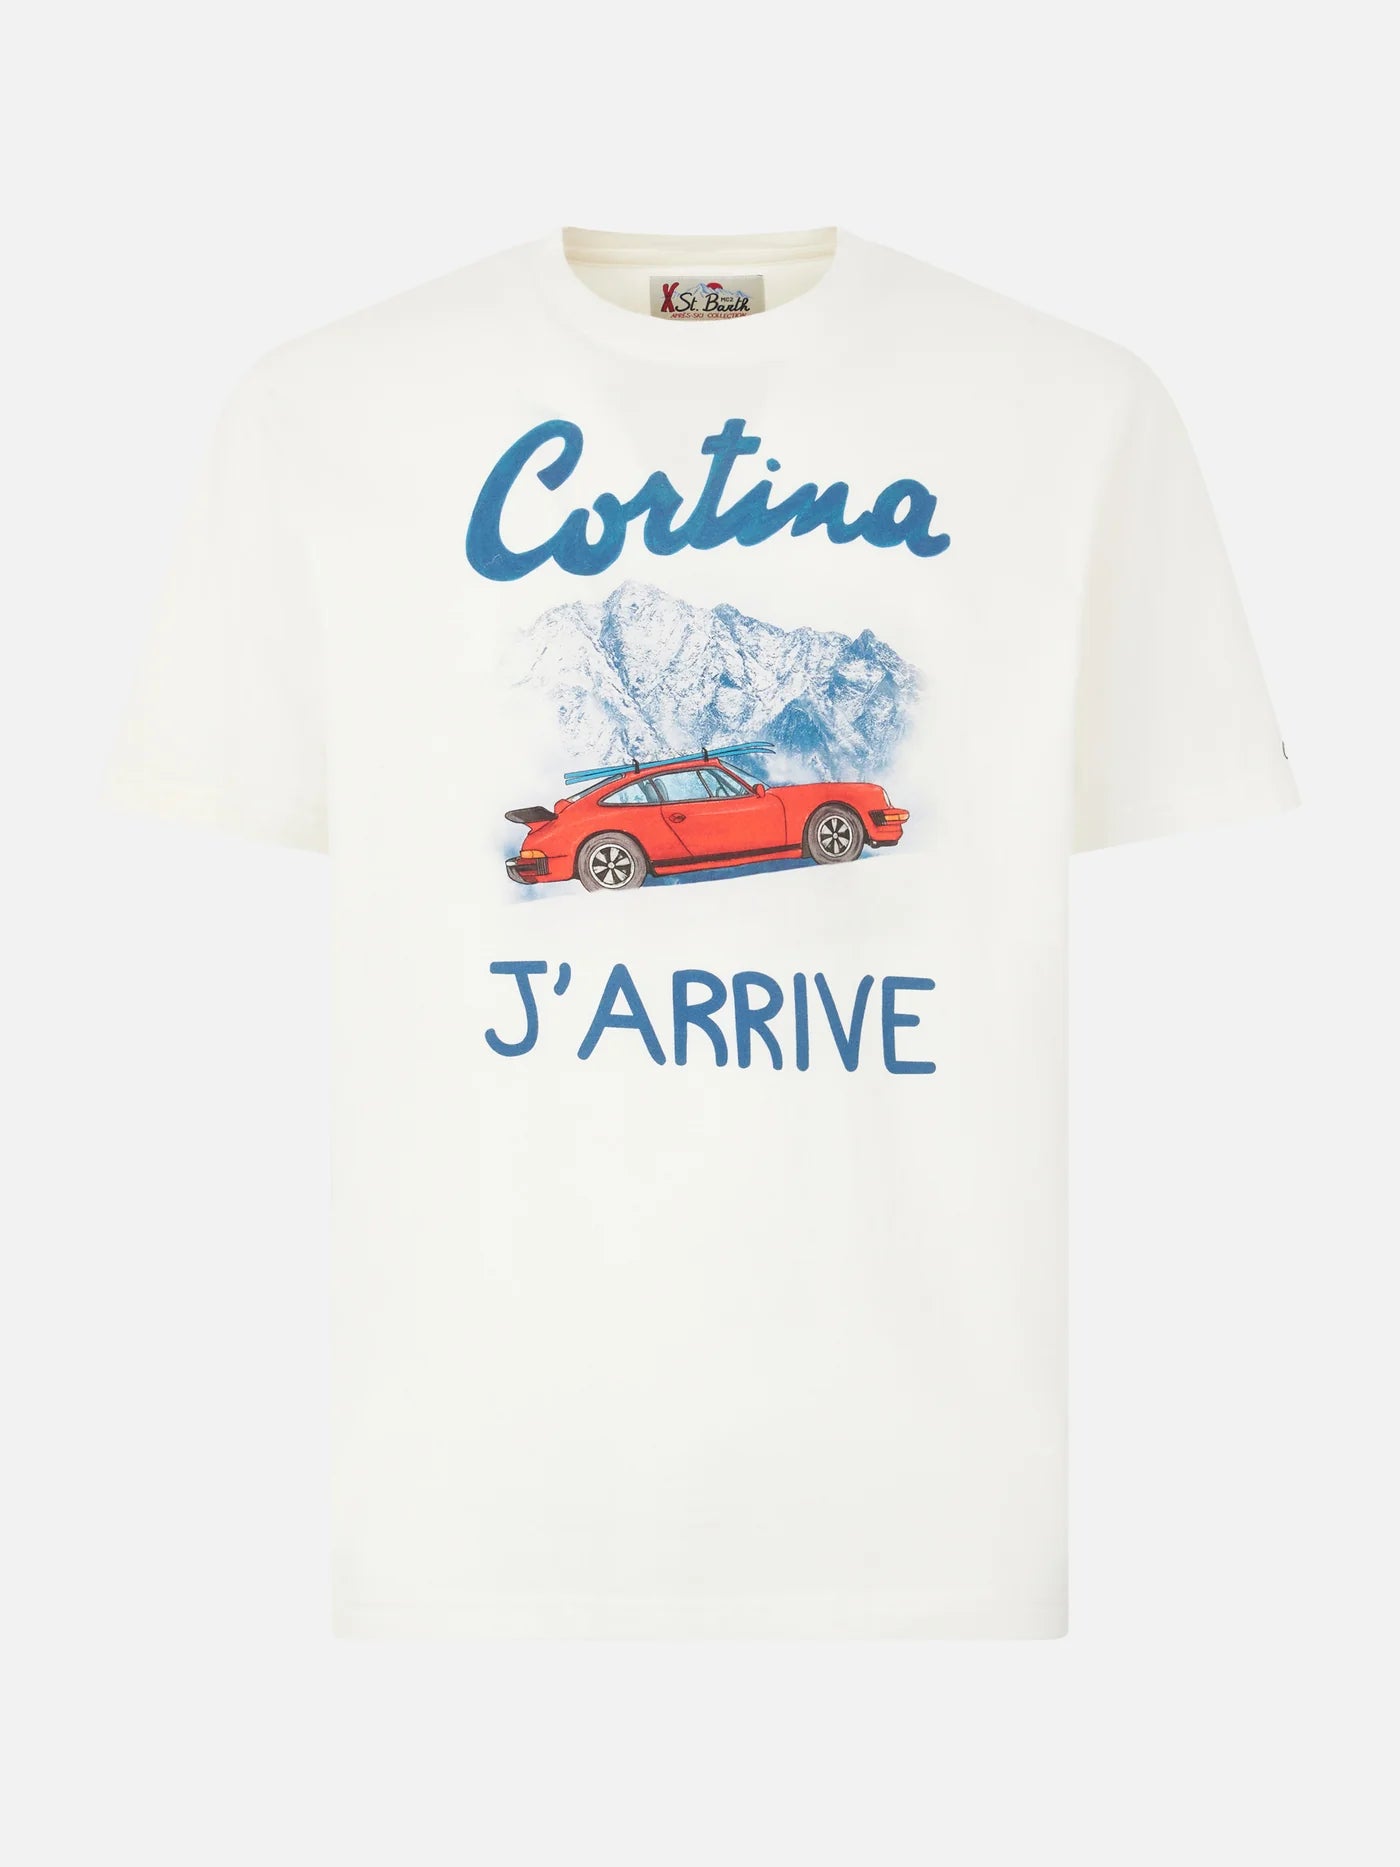 Мъжка памучна тениска Cortina J'arrive print